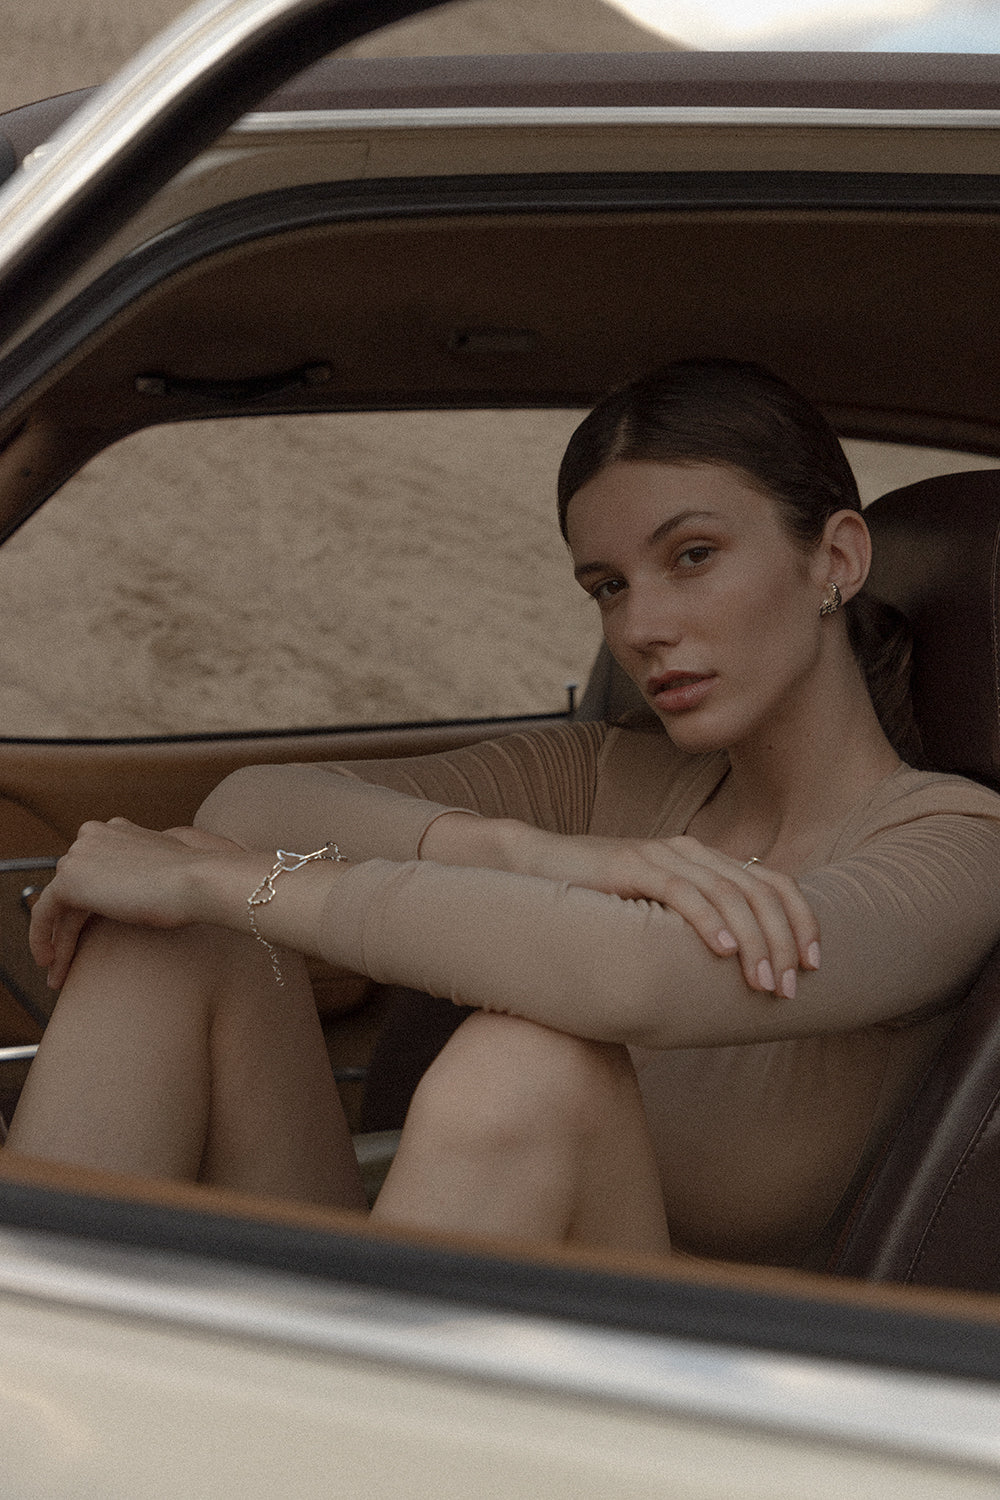 kolczyki CORNU dziewczyna w Fordzie Capri biżuteria artystyczna UMIAR